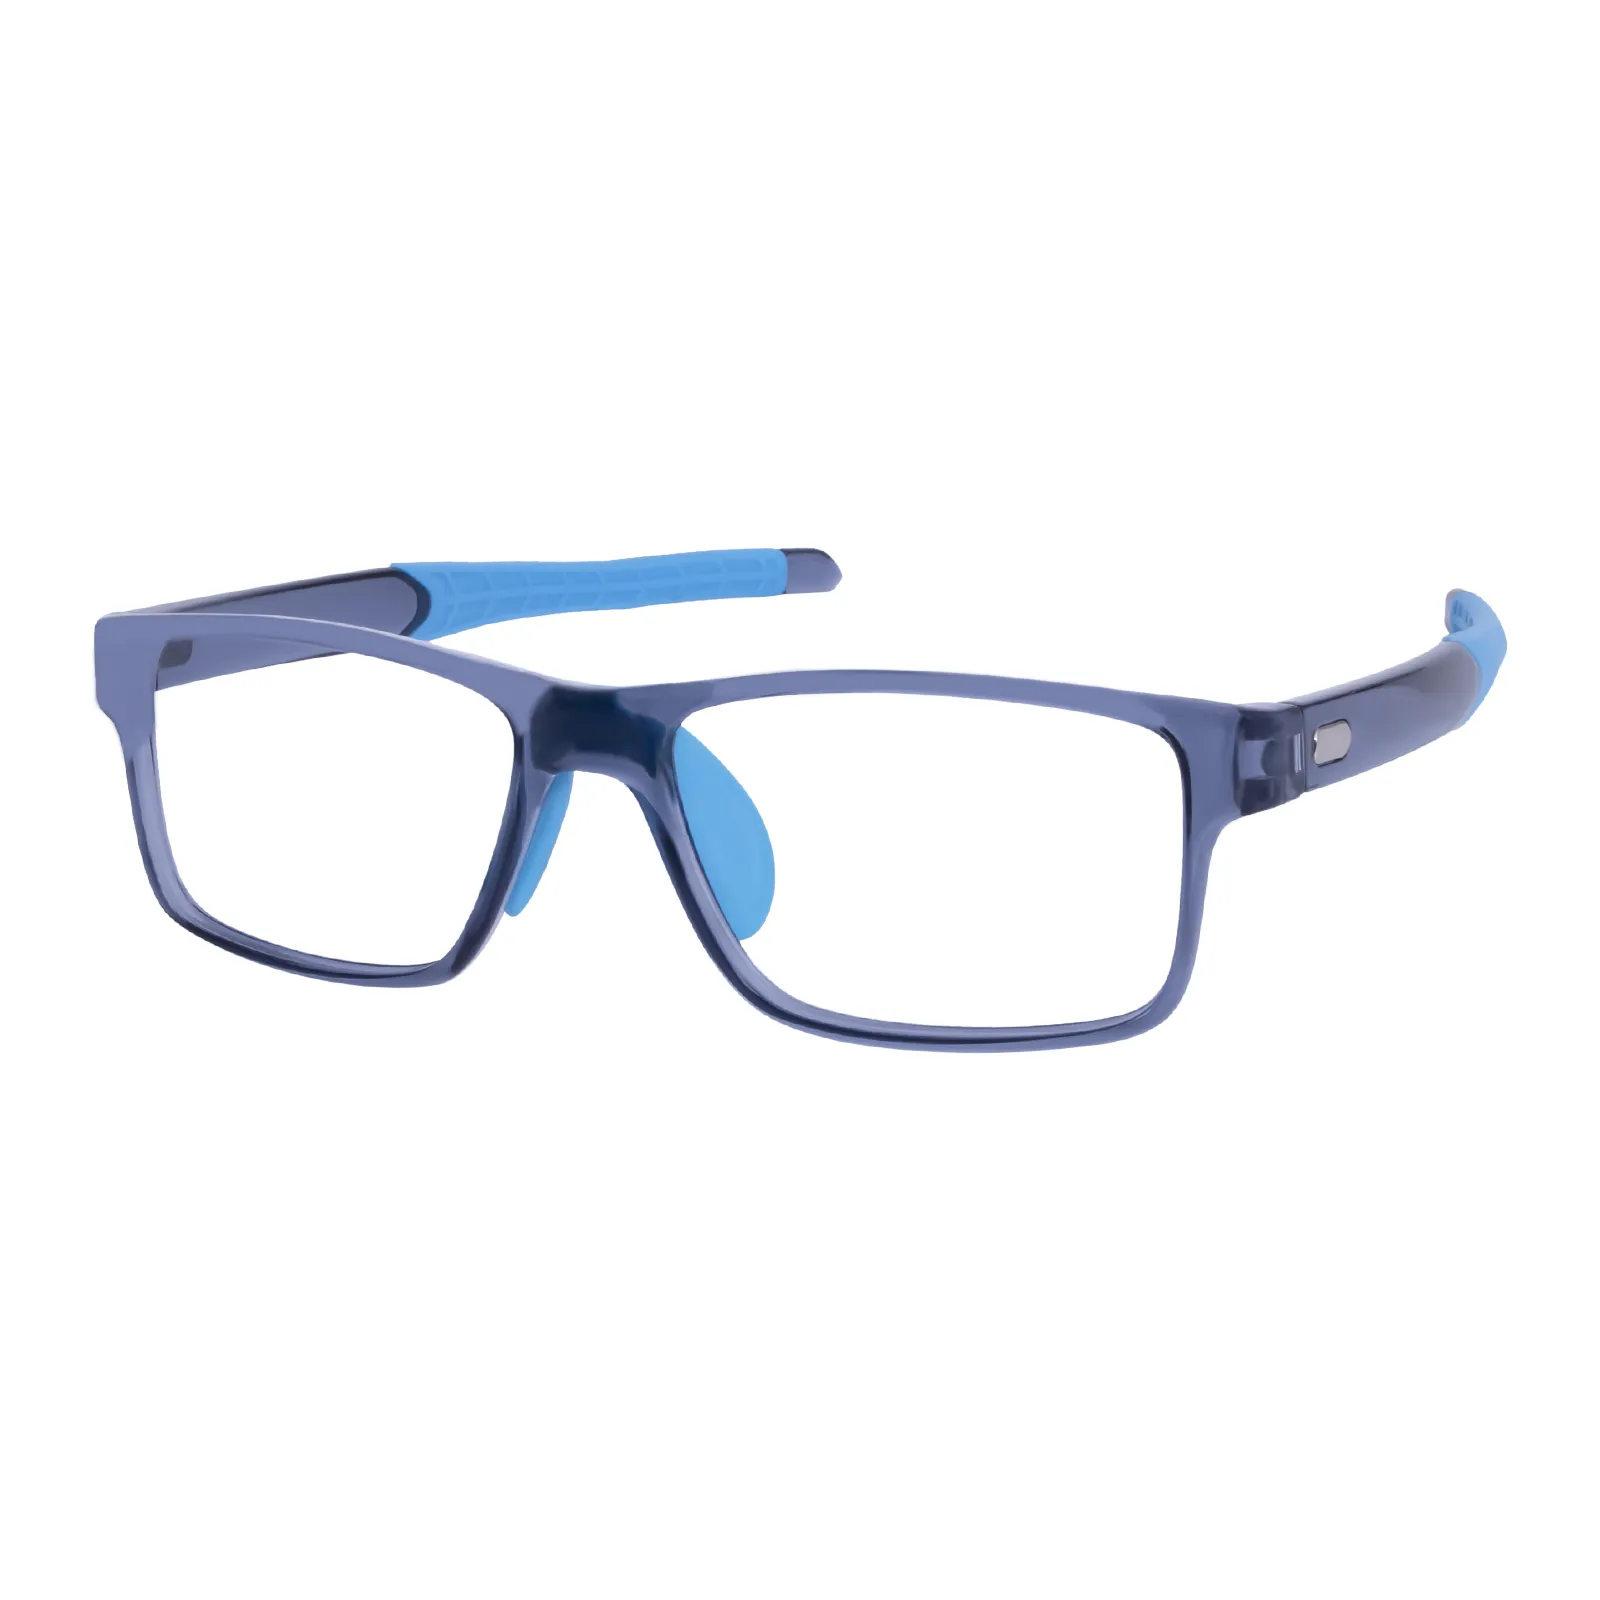 Anthony - Rectangle Black/Blue Glasses for Men